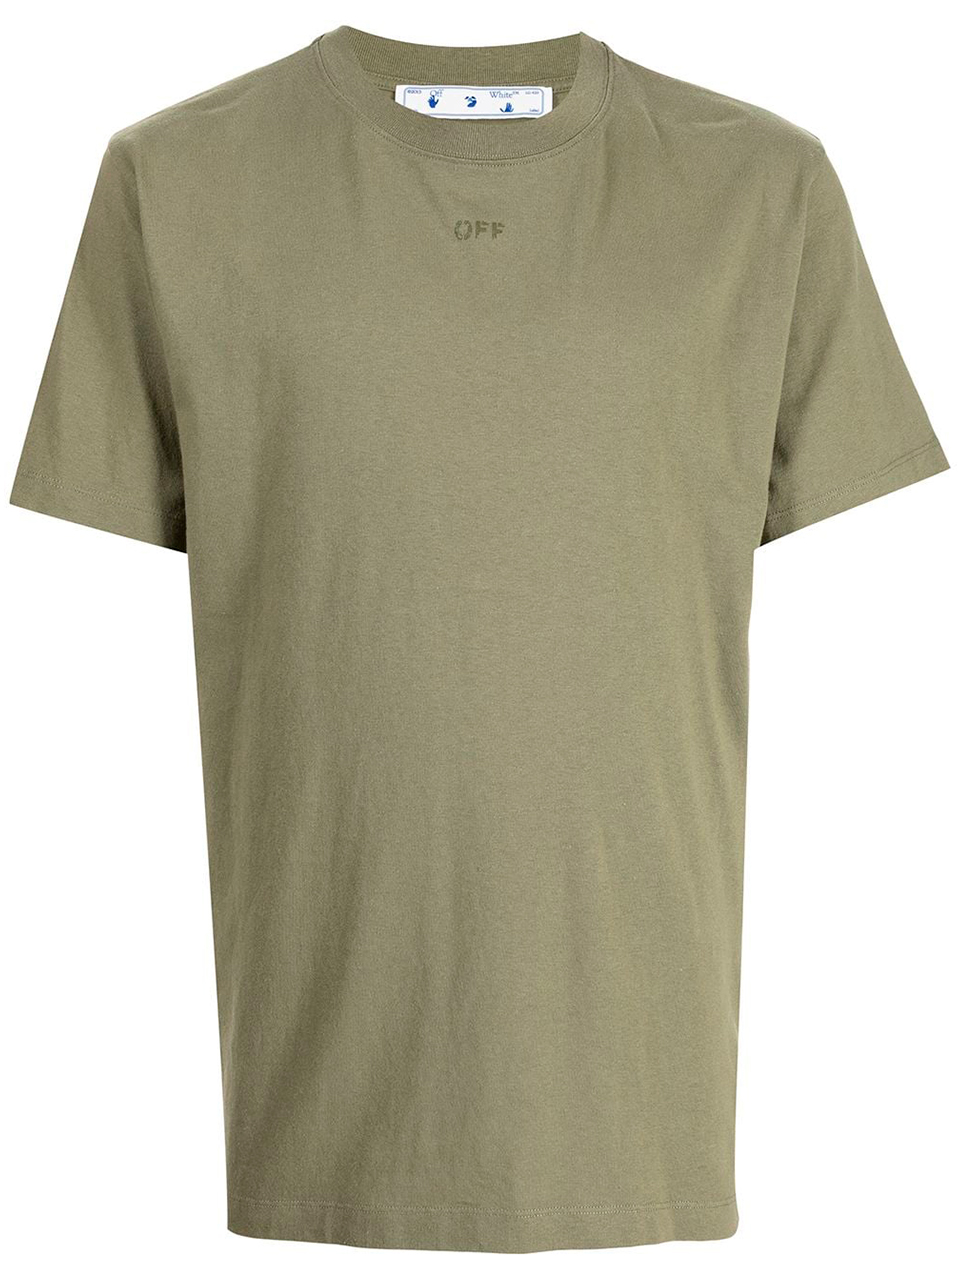 Imagem de: Camiseta Off-White Verde Musgo com Estampa Setas